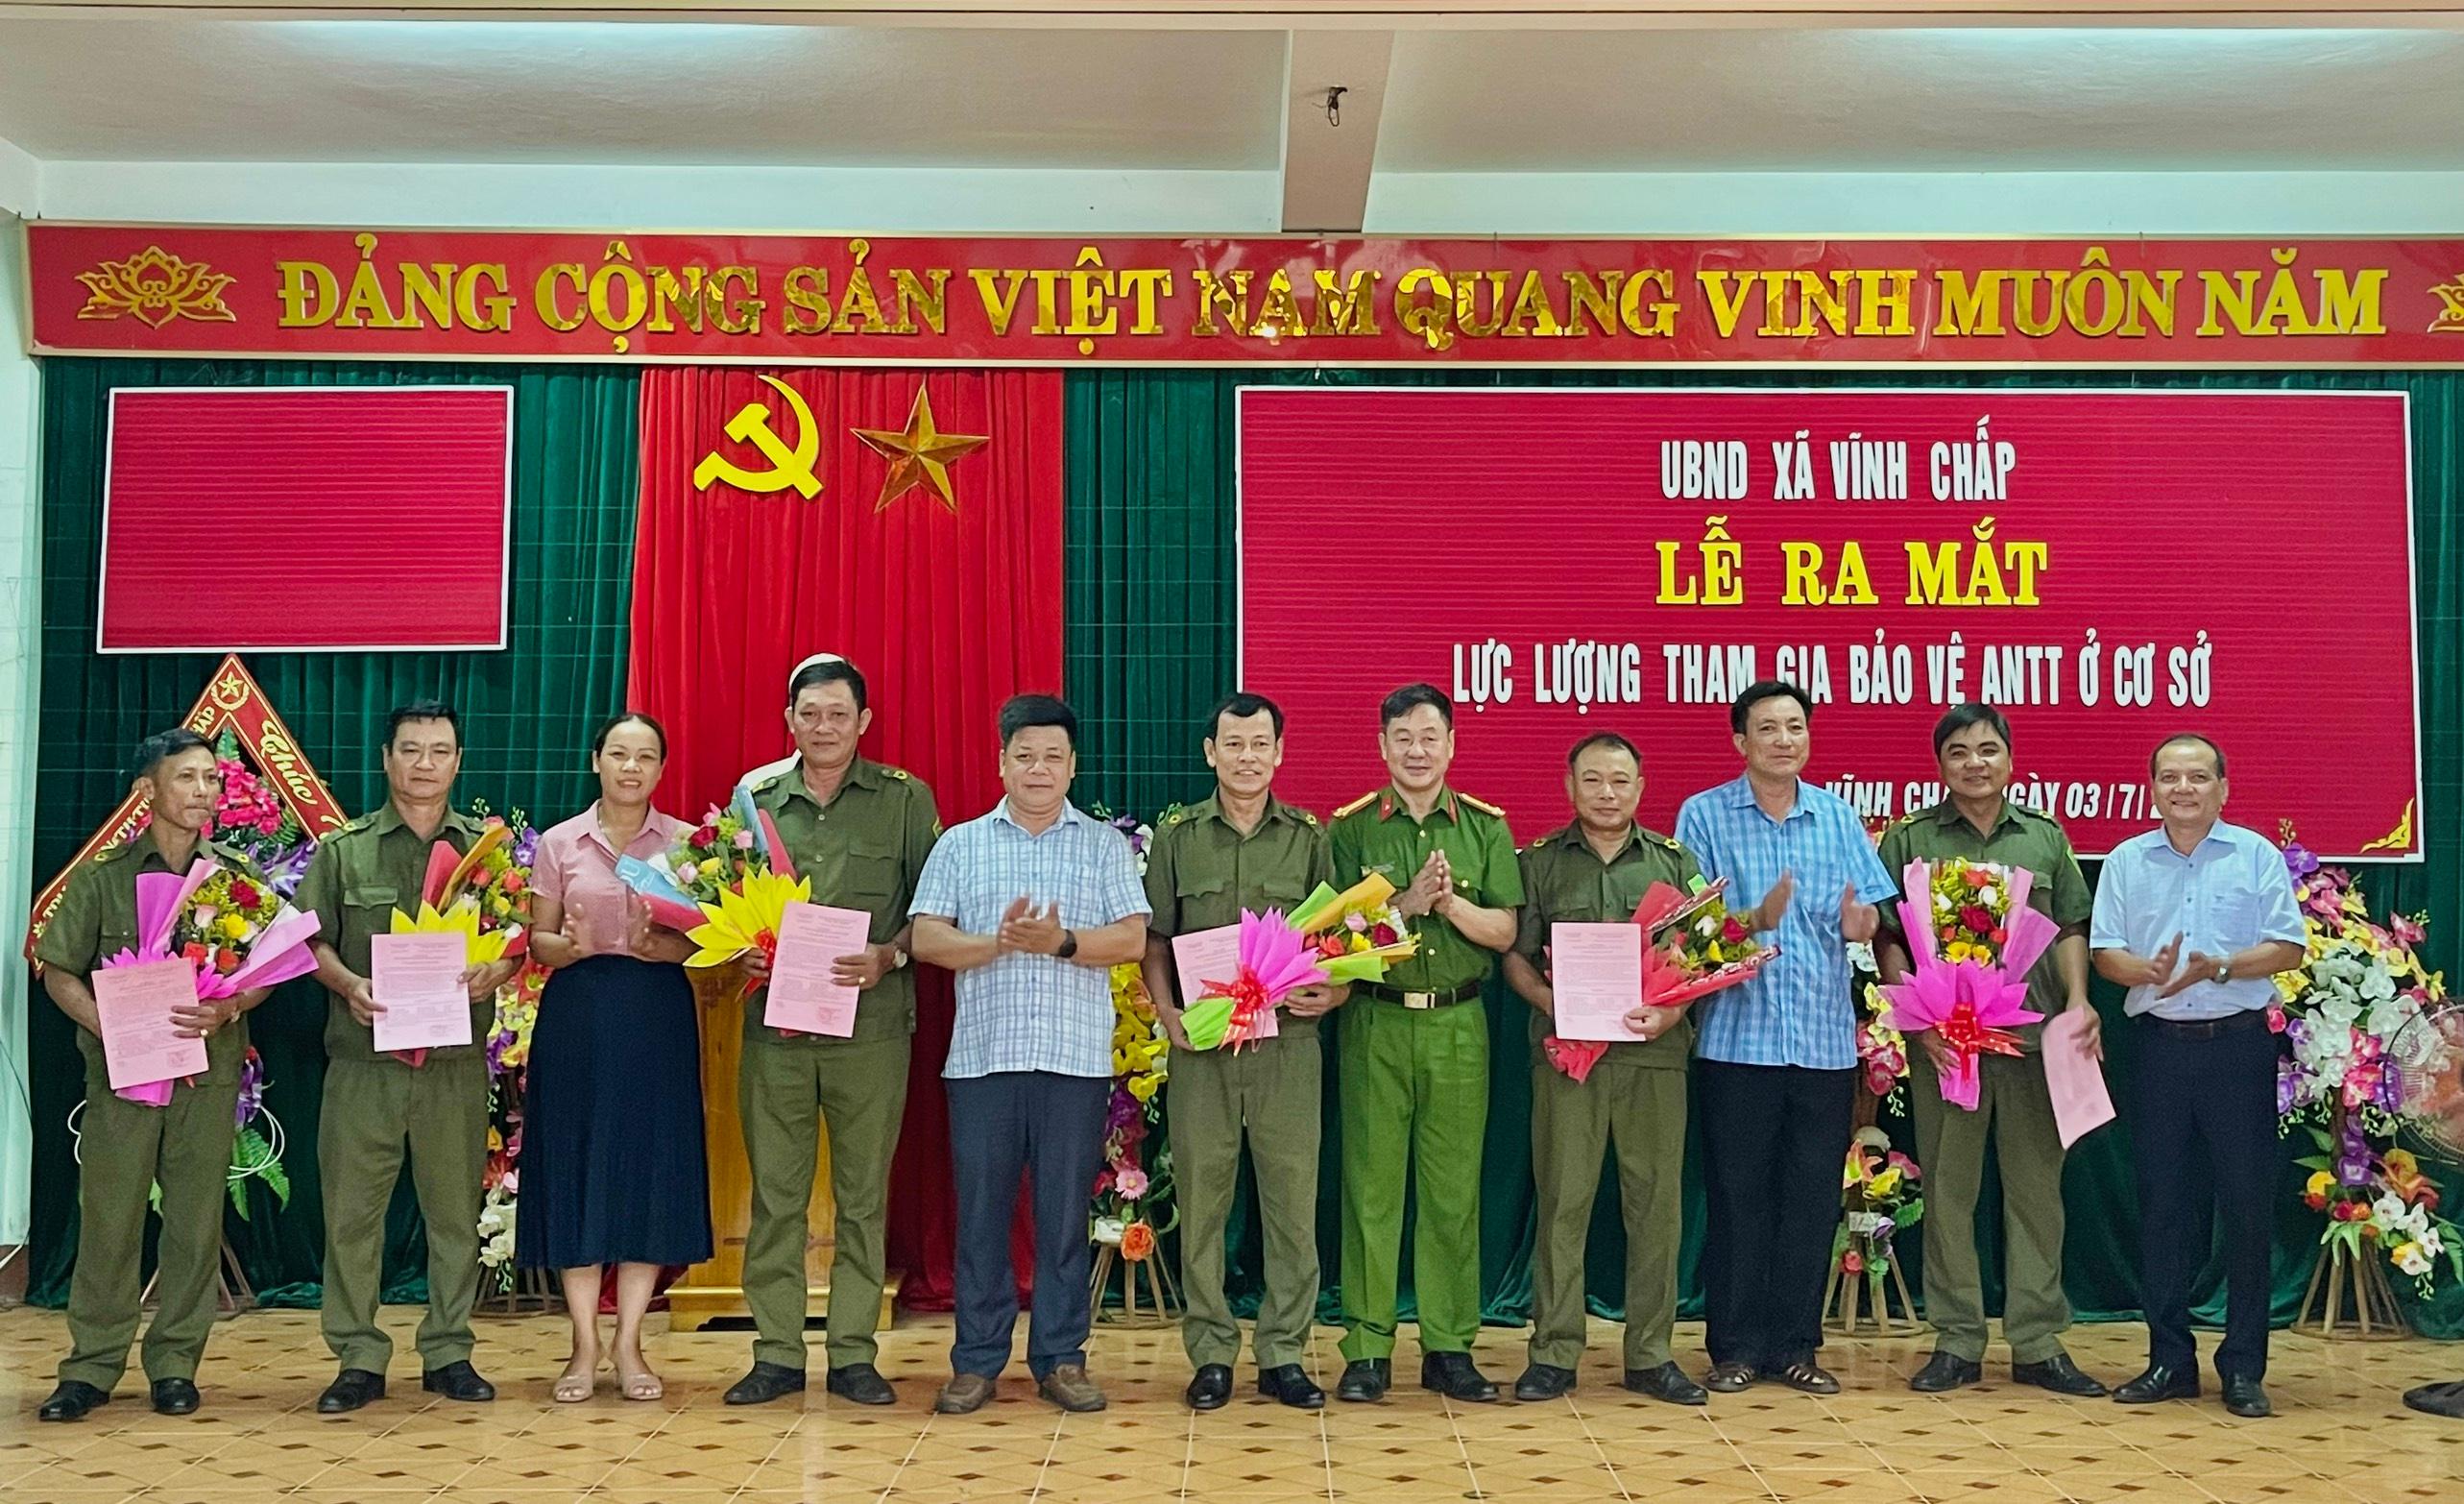 Xã Vĩnh Chấp: ra mắt lực lượng tham gia bảo vệ ANTT ở cơ sở